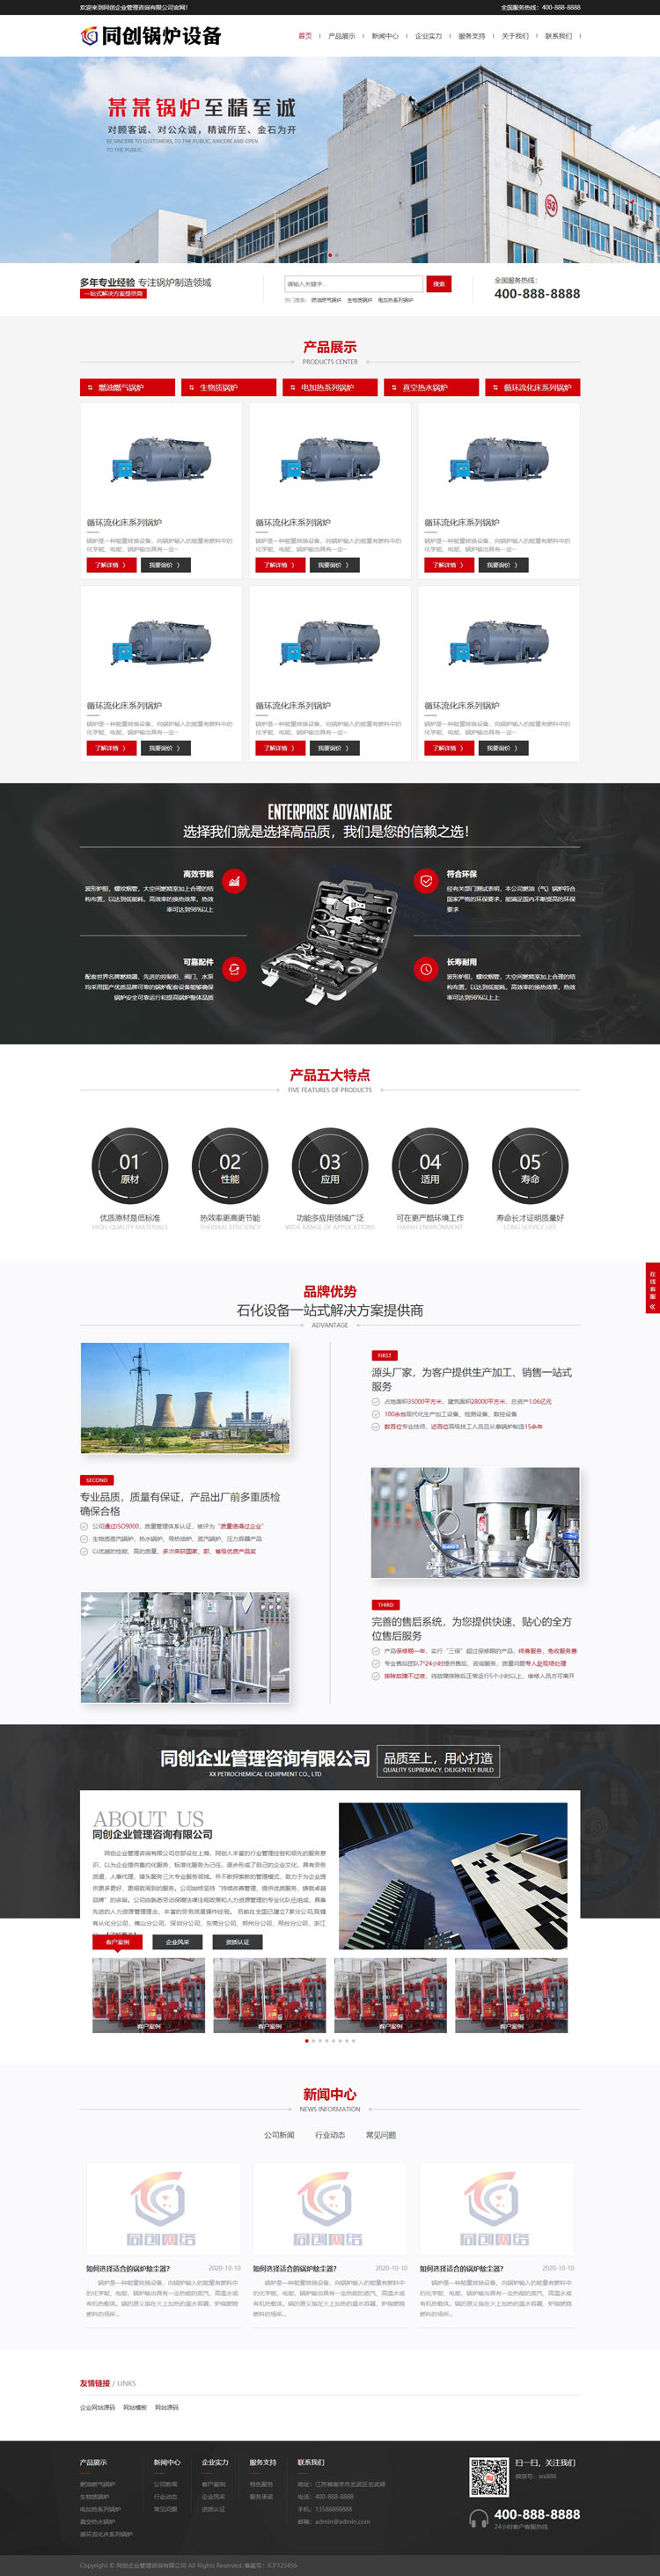 响应式锅炉设备企业网站源码模板-BY042-2